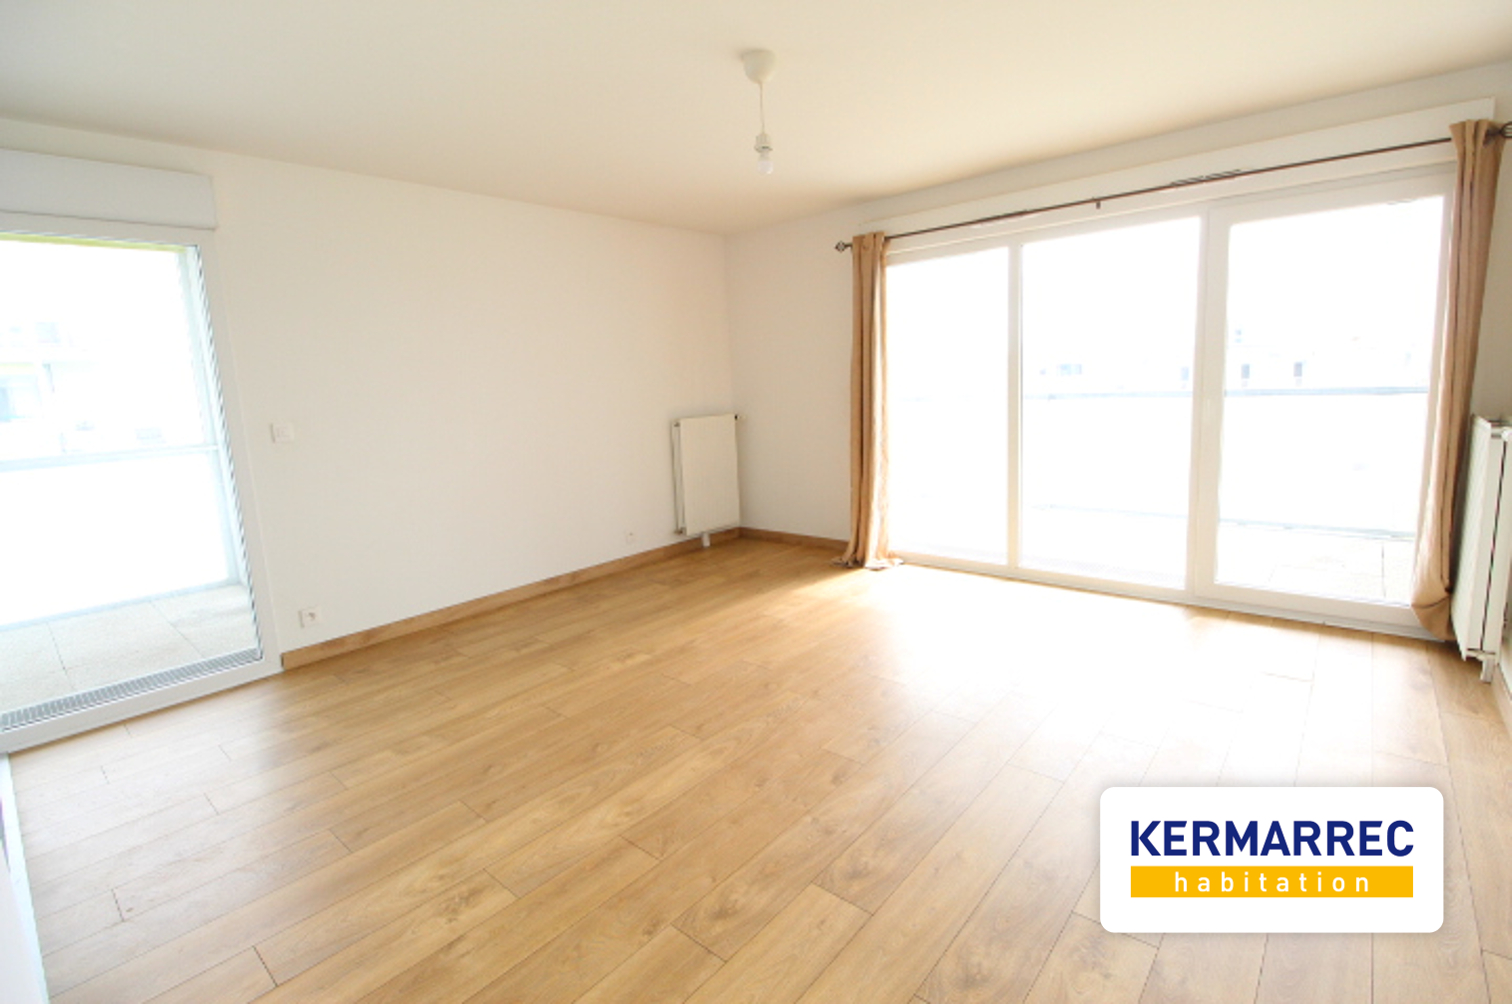 Appartement 3 pièces - 66 m² environ - 55094466l.jpg | Kermarrec Habitation